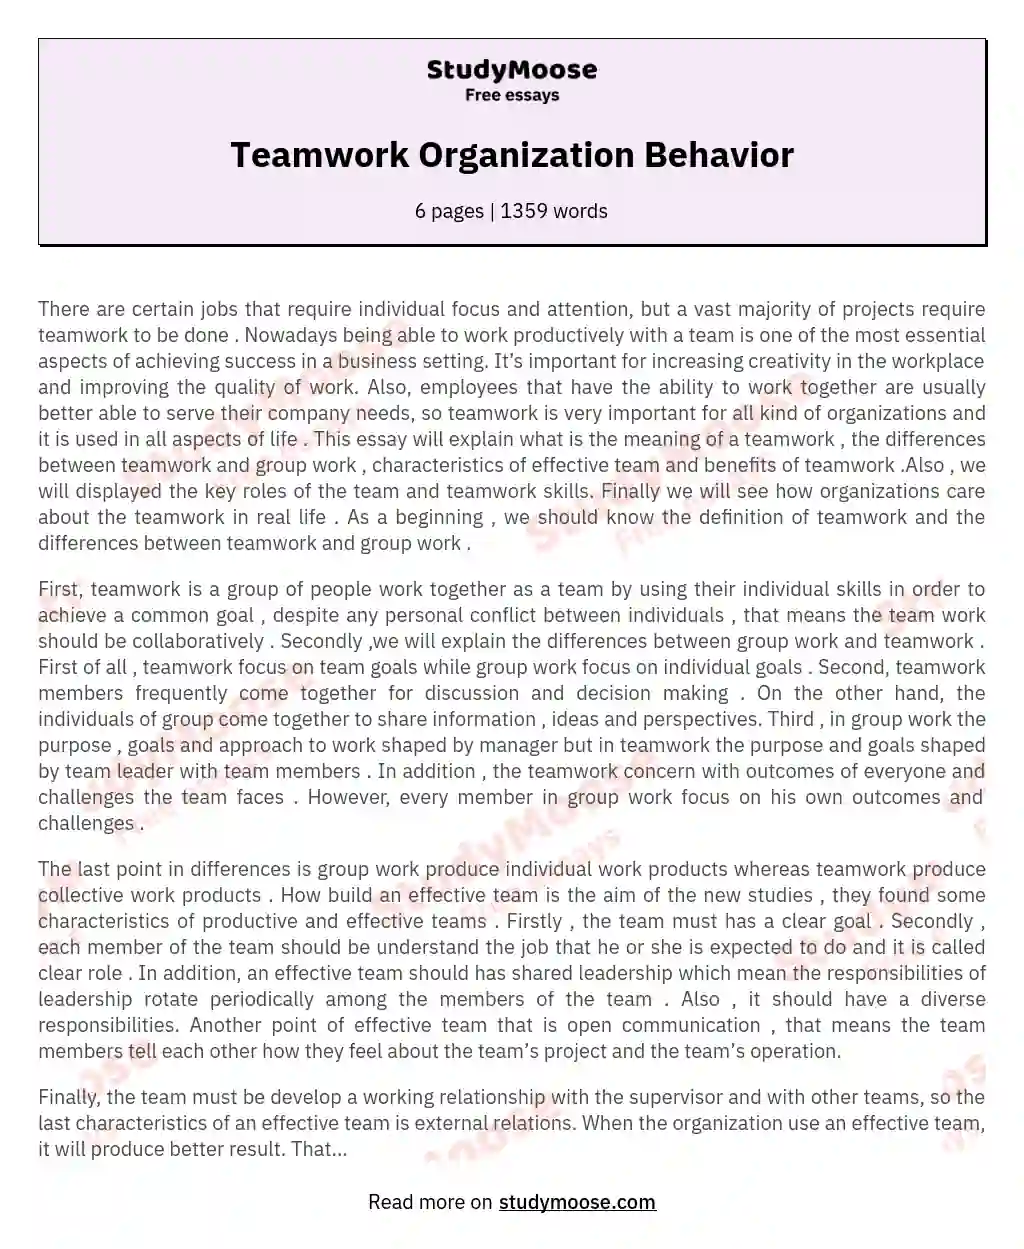 Teamwork Organization Behavior